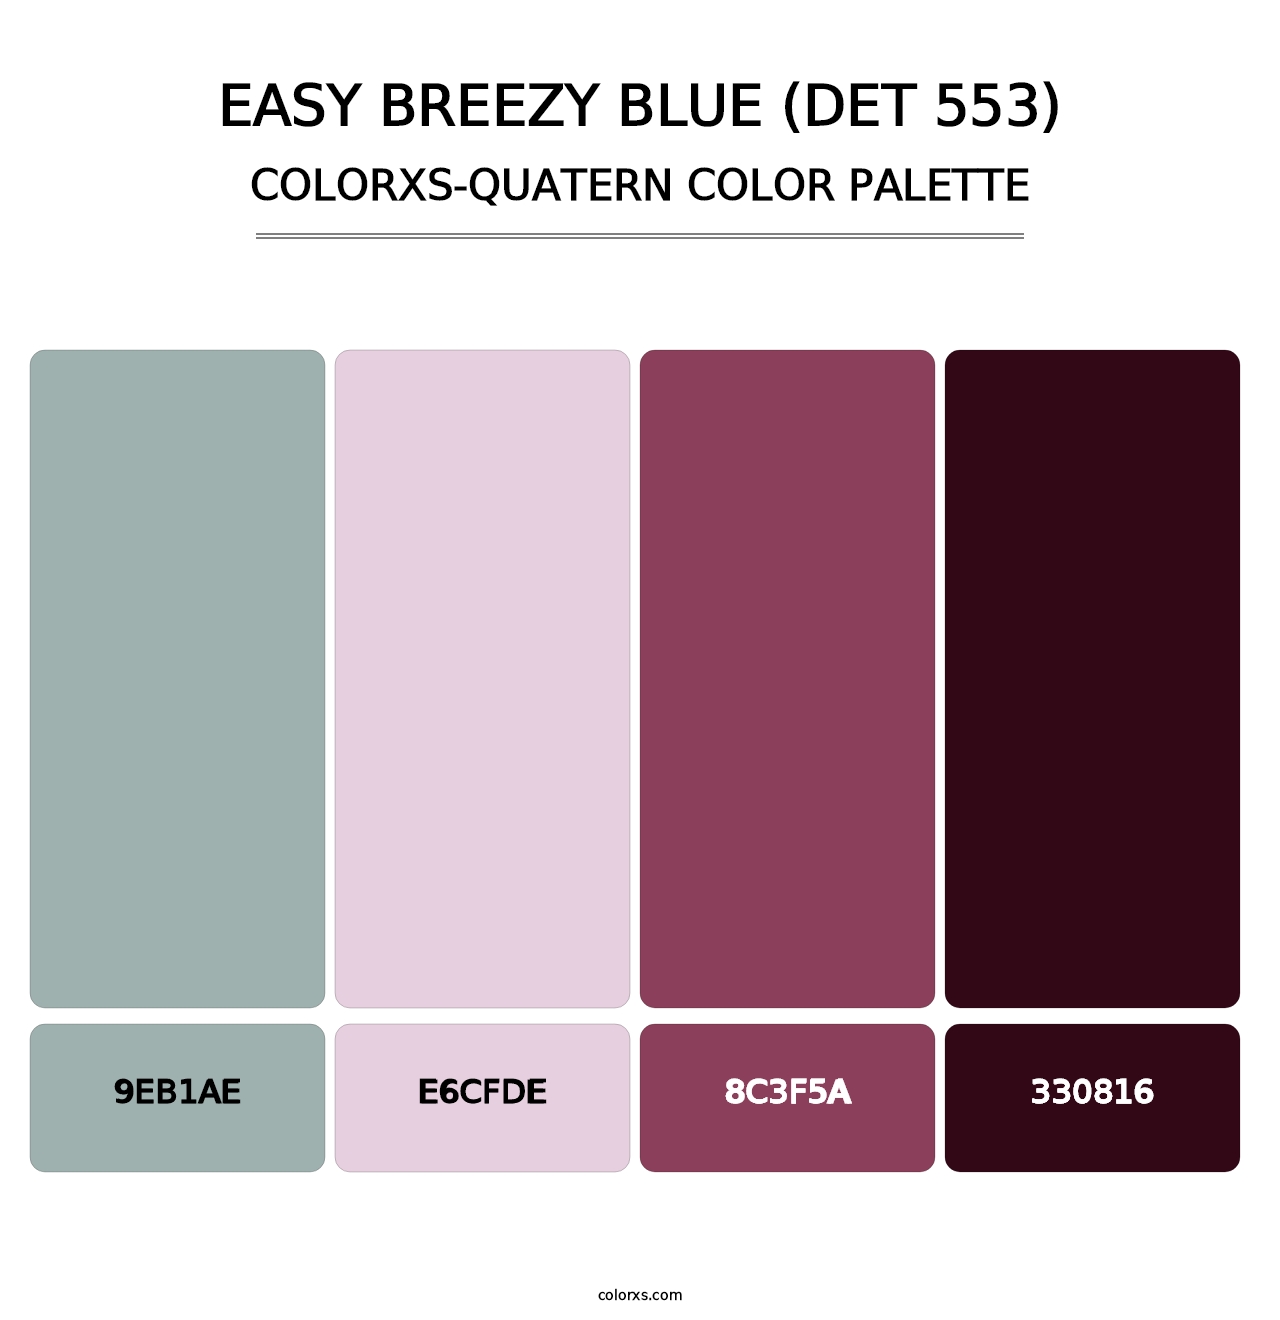 Easy Breezy Blue (DET 553) - Colorxs Quatern Palette